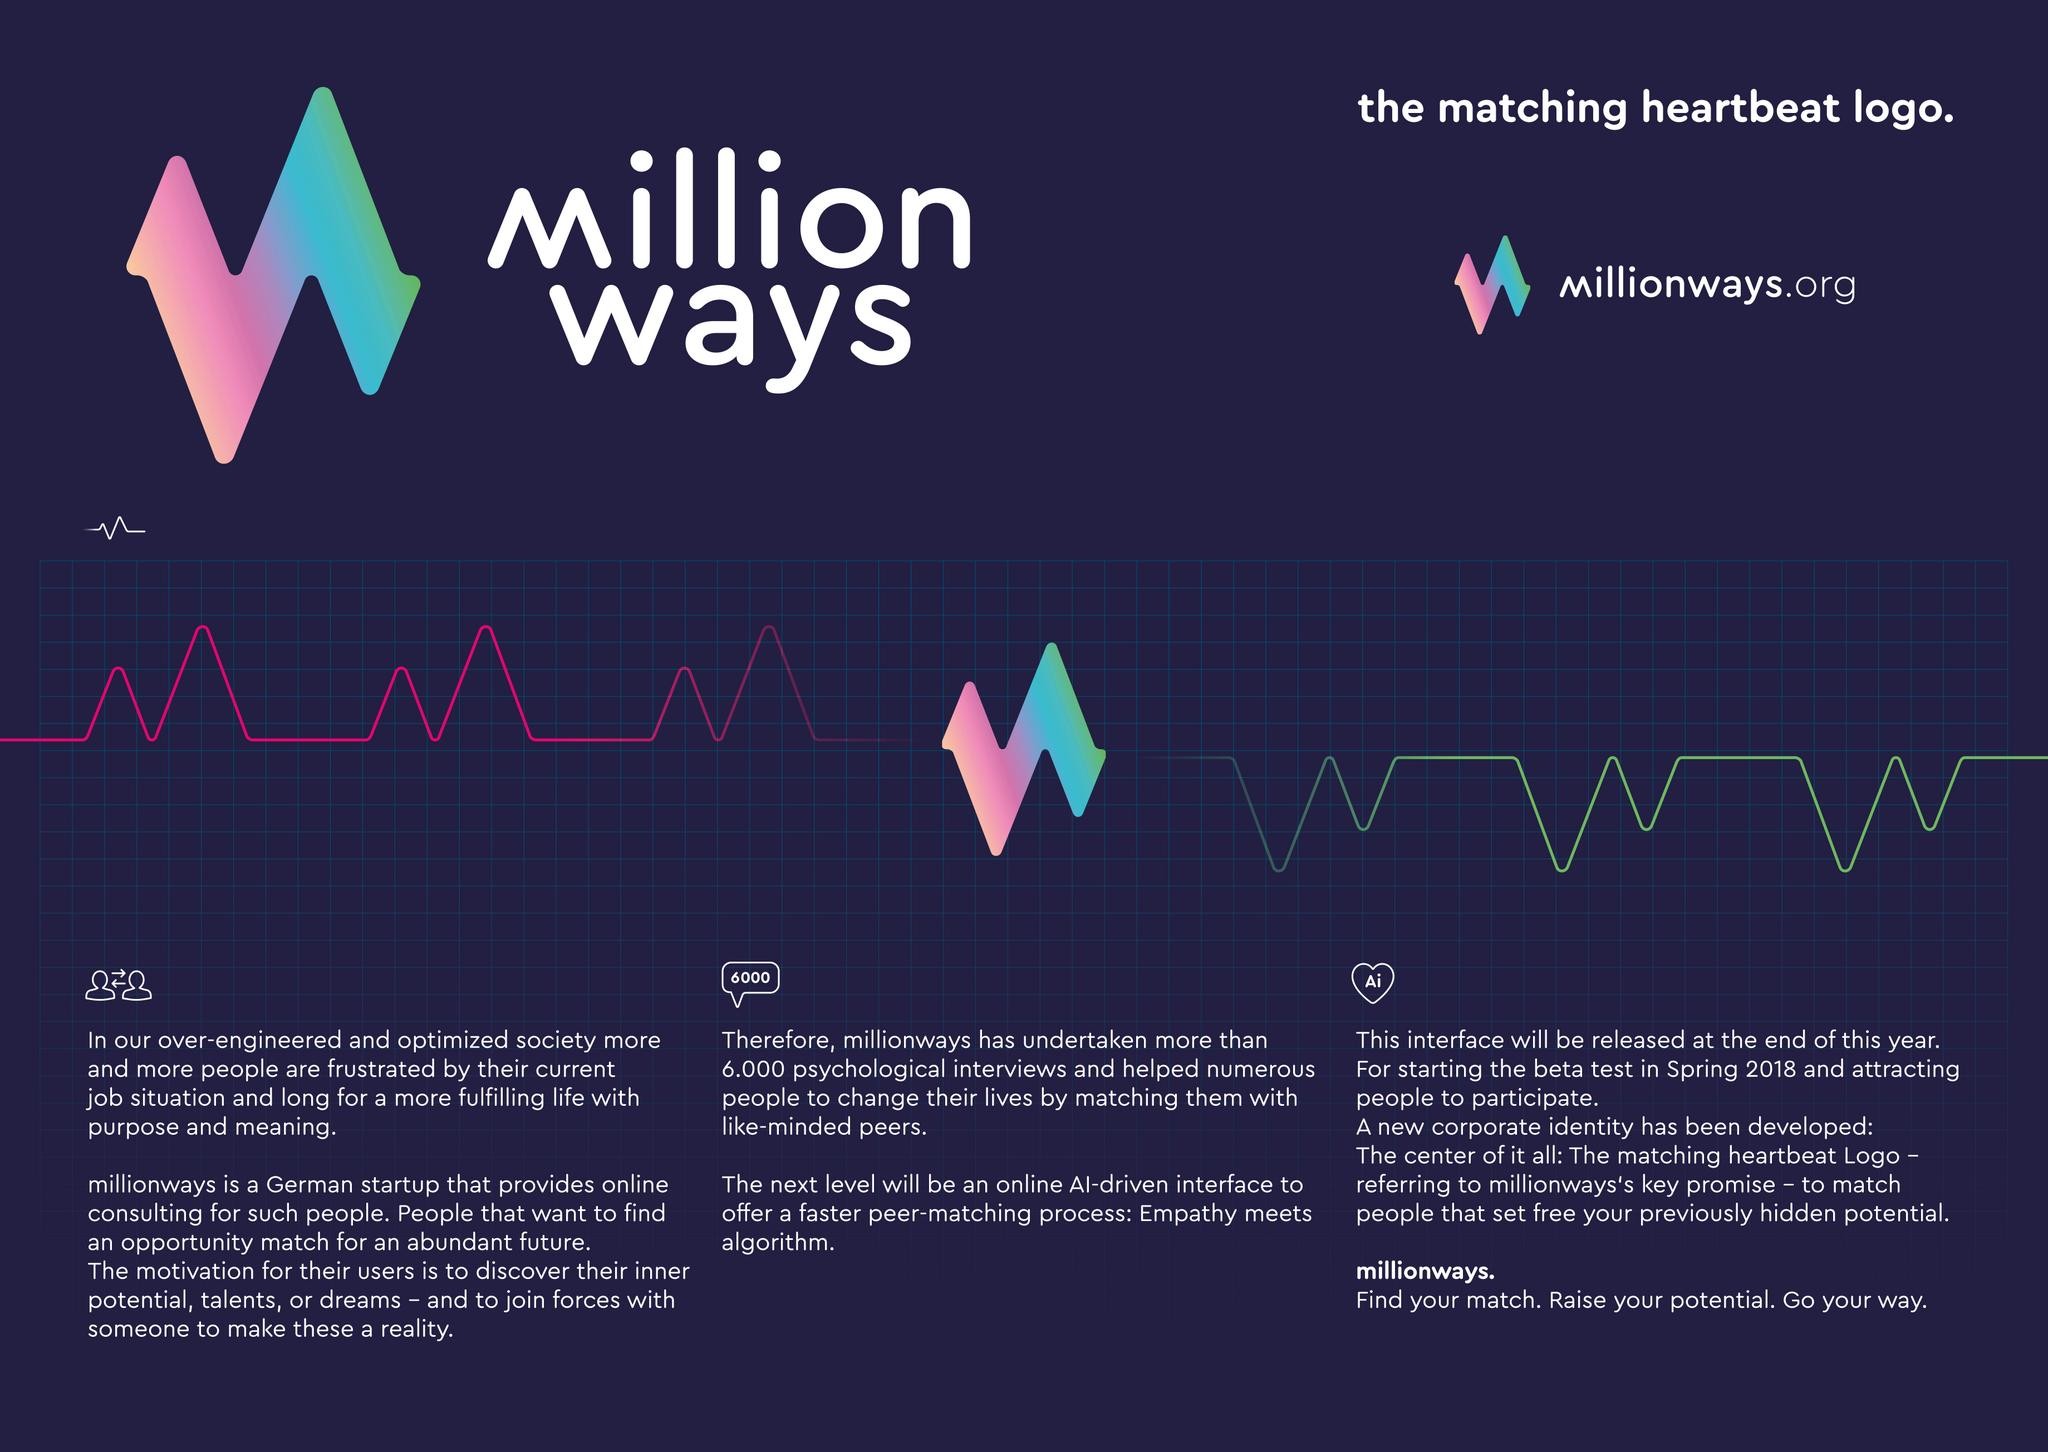 MILLIONWAYS - MATCHING HEARTBEATS LOGO